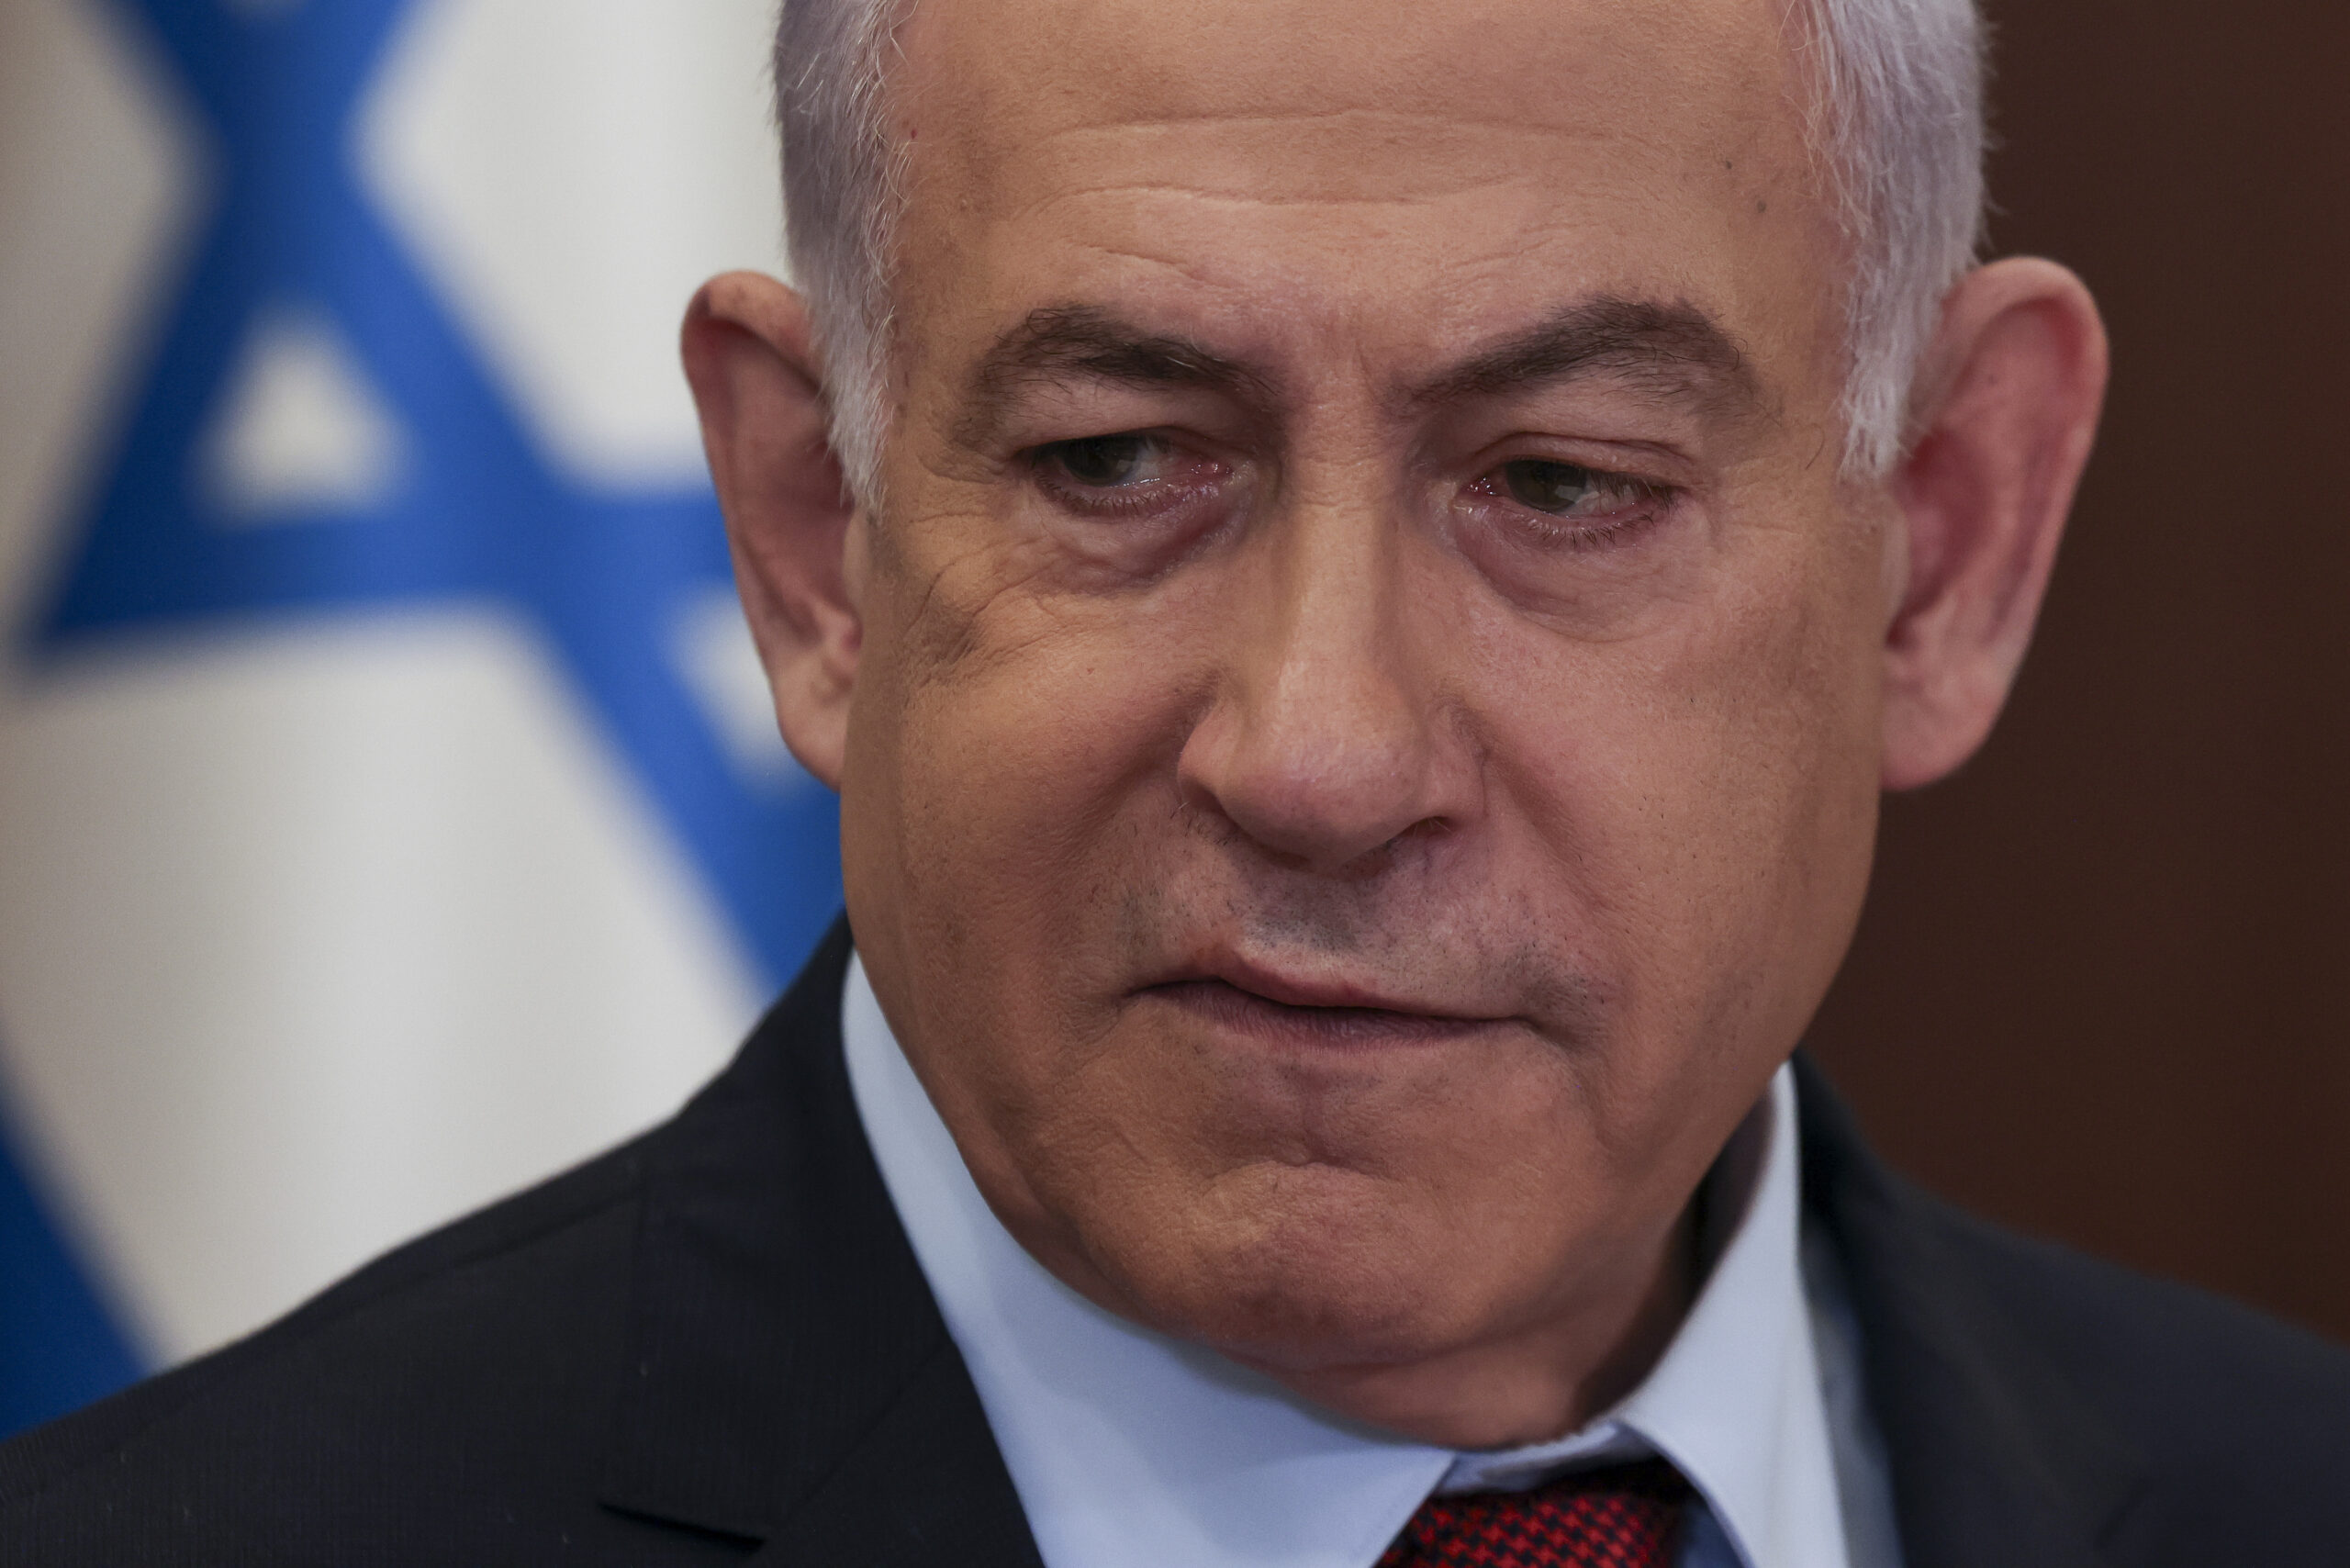 Netanyahu conferma il prossimo attacco a Rafah: "Così ci sarà la vittoria finale su Hamas"